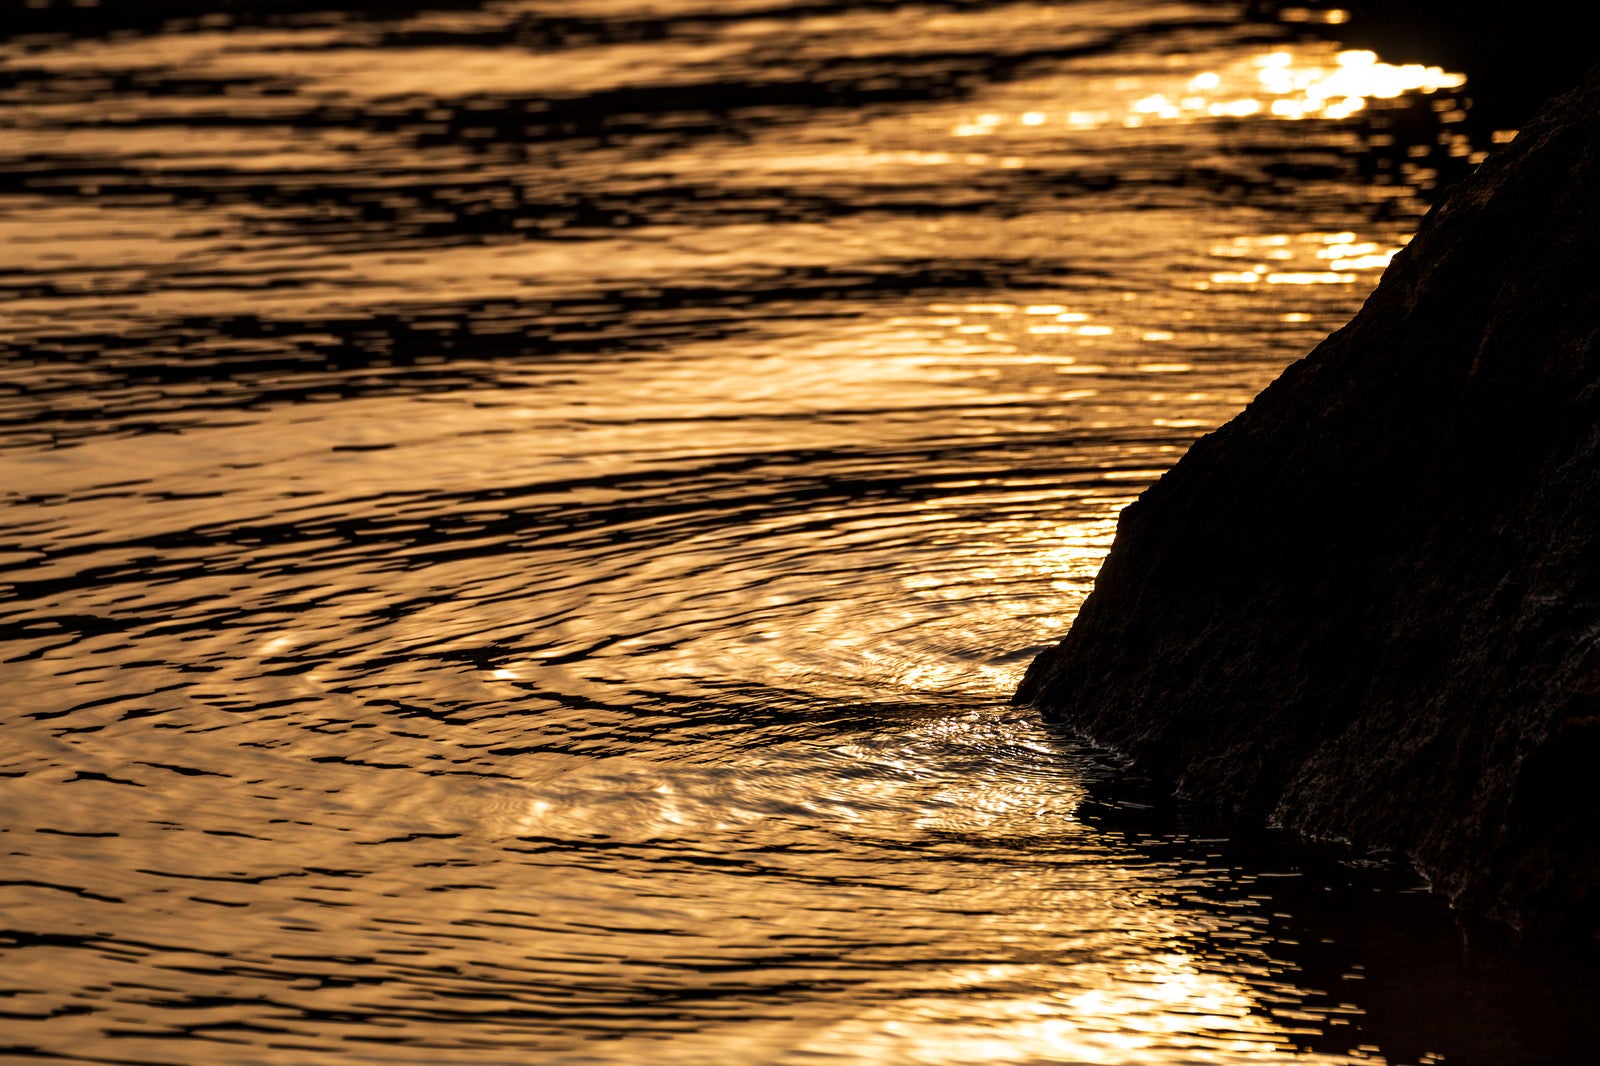 「夕焼け色に染まる湖面の波紋」の写真